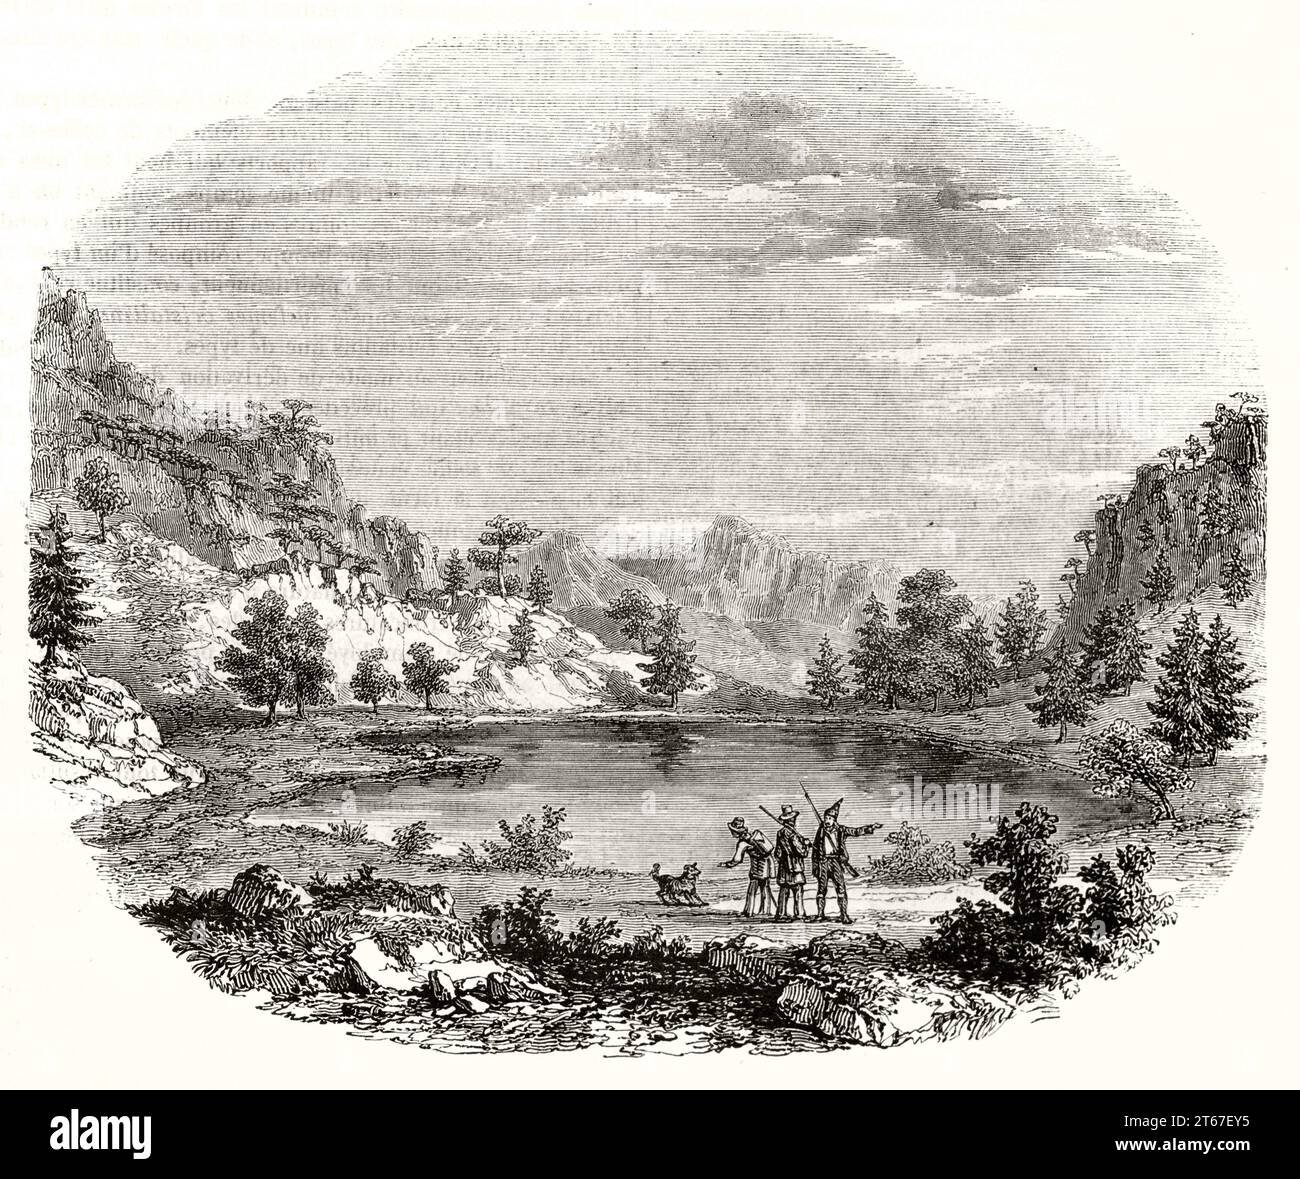 Vue ancienne d'un petit lac de montagne en Corse, France. Par Freeman, publ. Sur magasin pittoresque, Paris, 1851 Banque D'Images